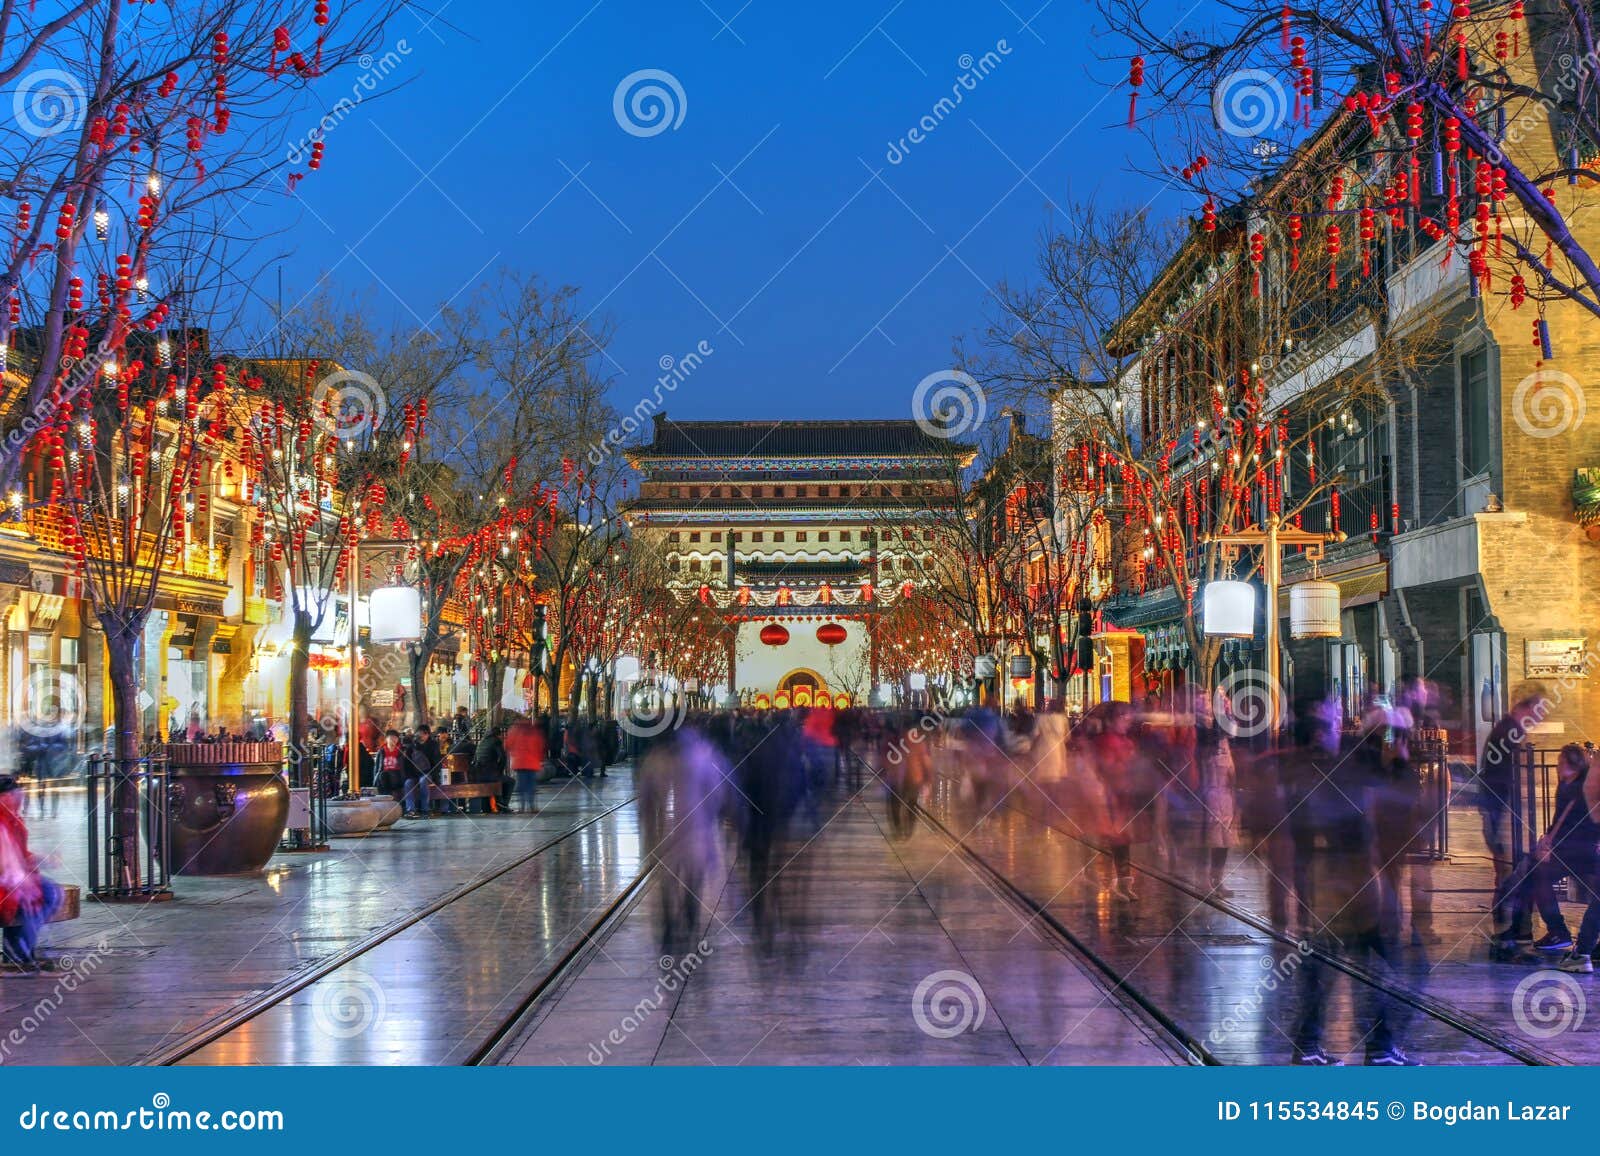 qianmen street, beijing, china